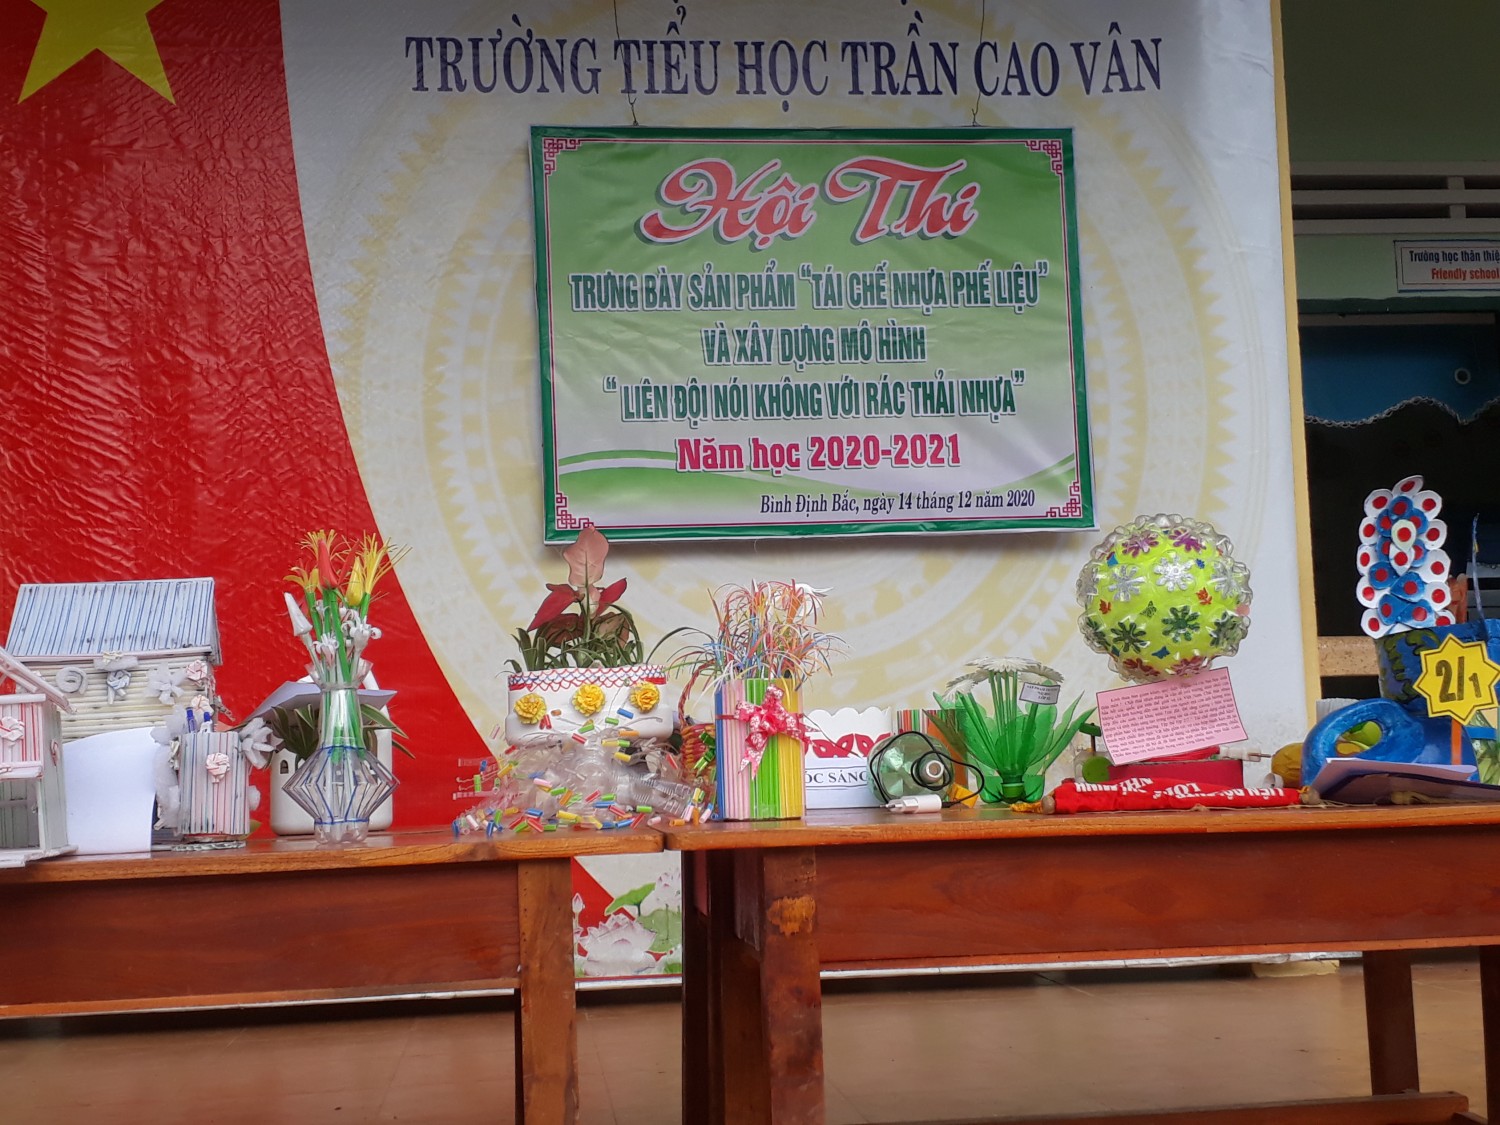 Liên đội Trần Cao Vân tổ chức cuộc thi "tái chế nhựa phế liệu" và cam kết thực hiện chương trình "Liên đội nói không với rác thải nhựa"